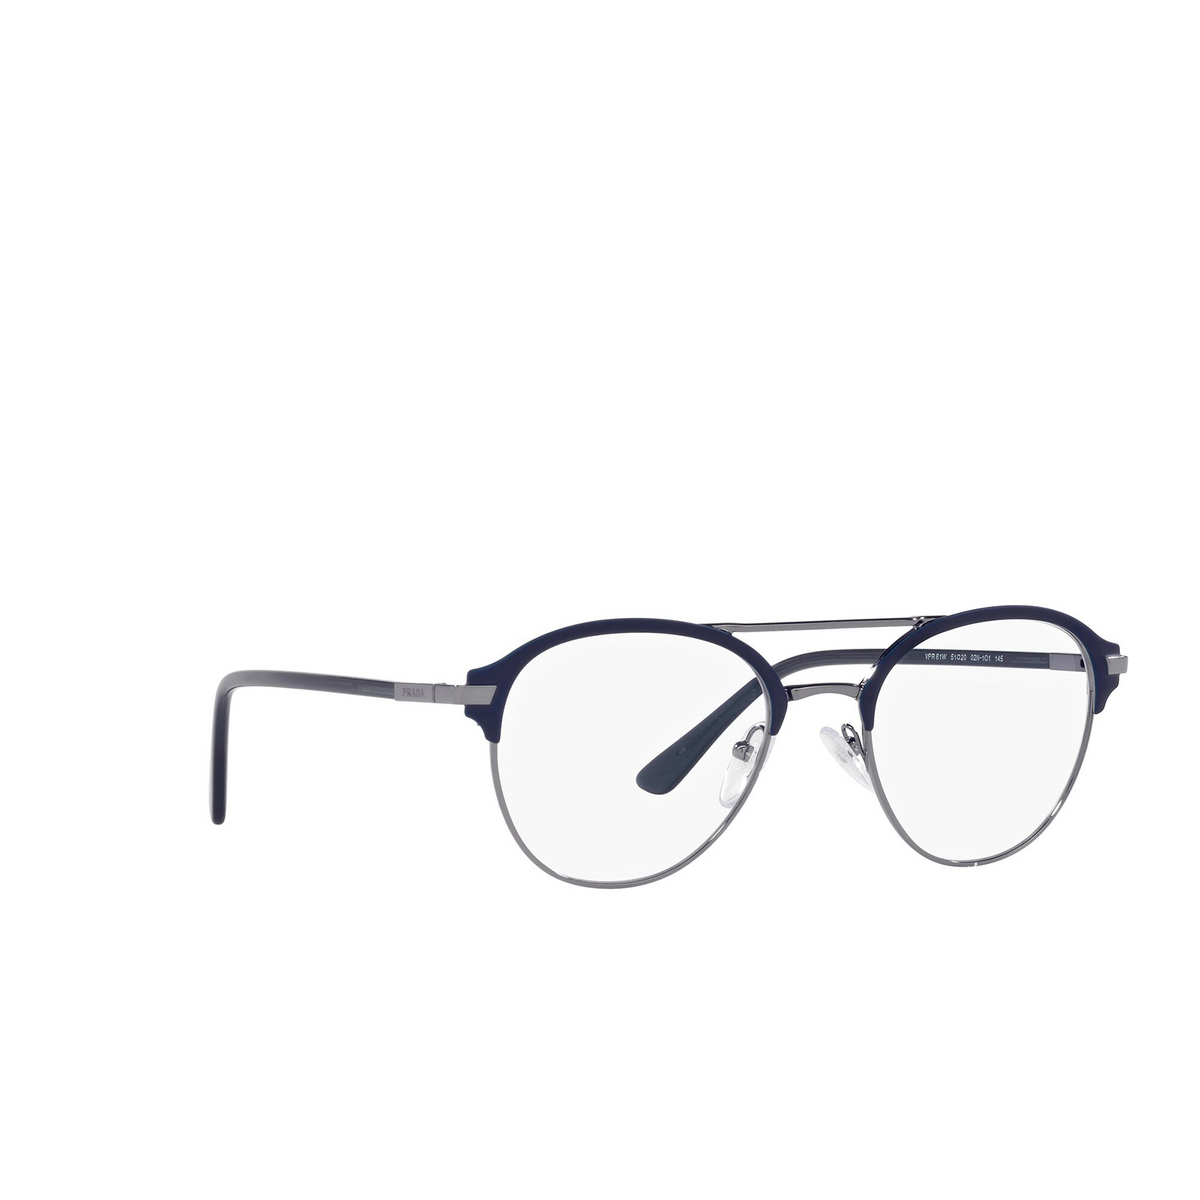 Prada® Aviator Eyeglasses: PR 61WV color Matte Baltic / Gunmetal 02N1O1 - three-quarters view.